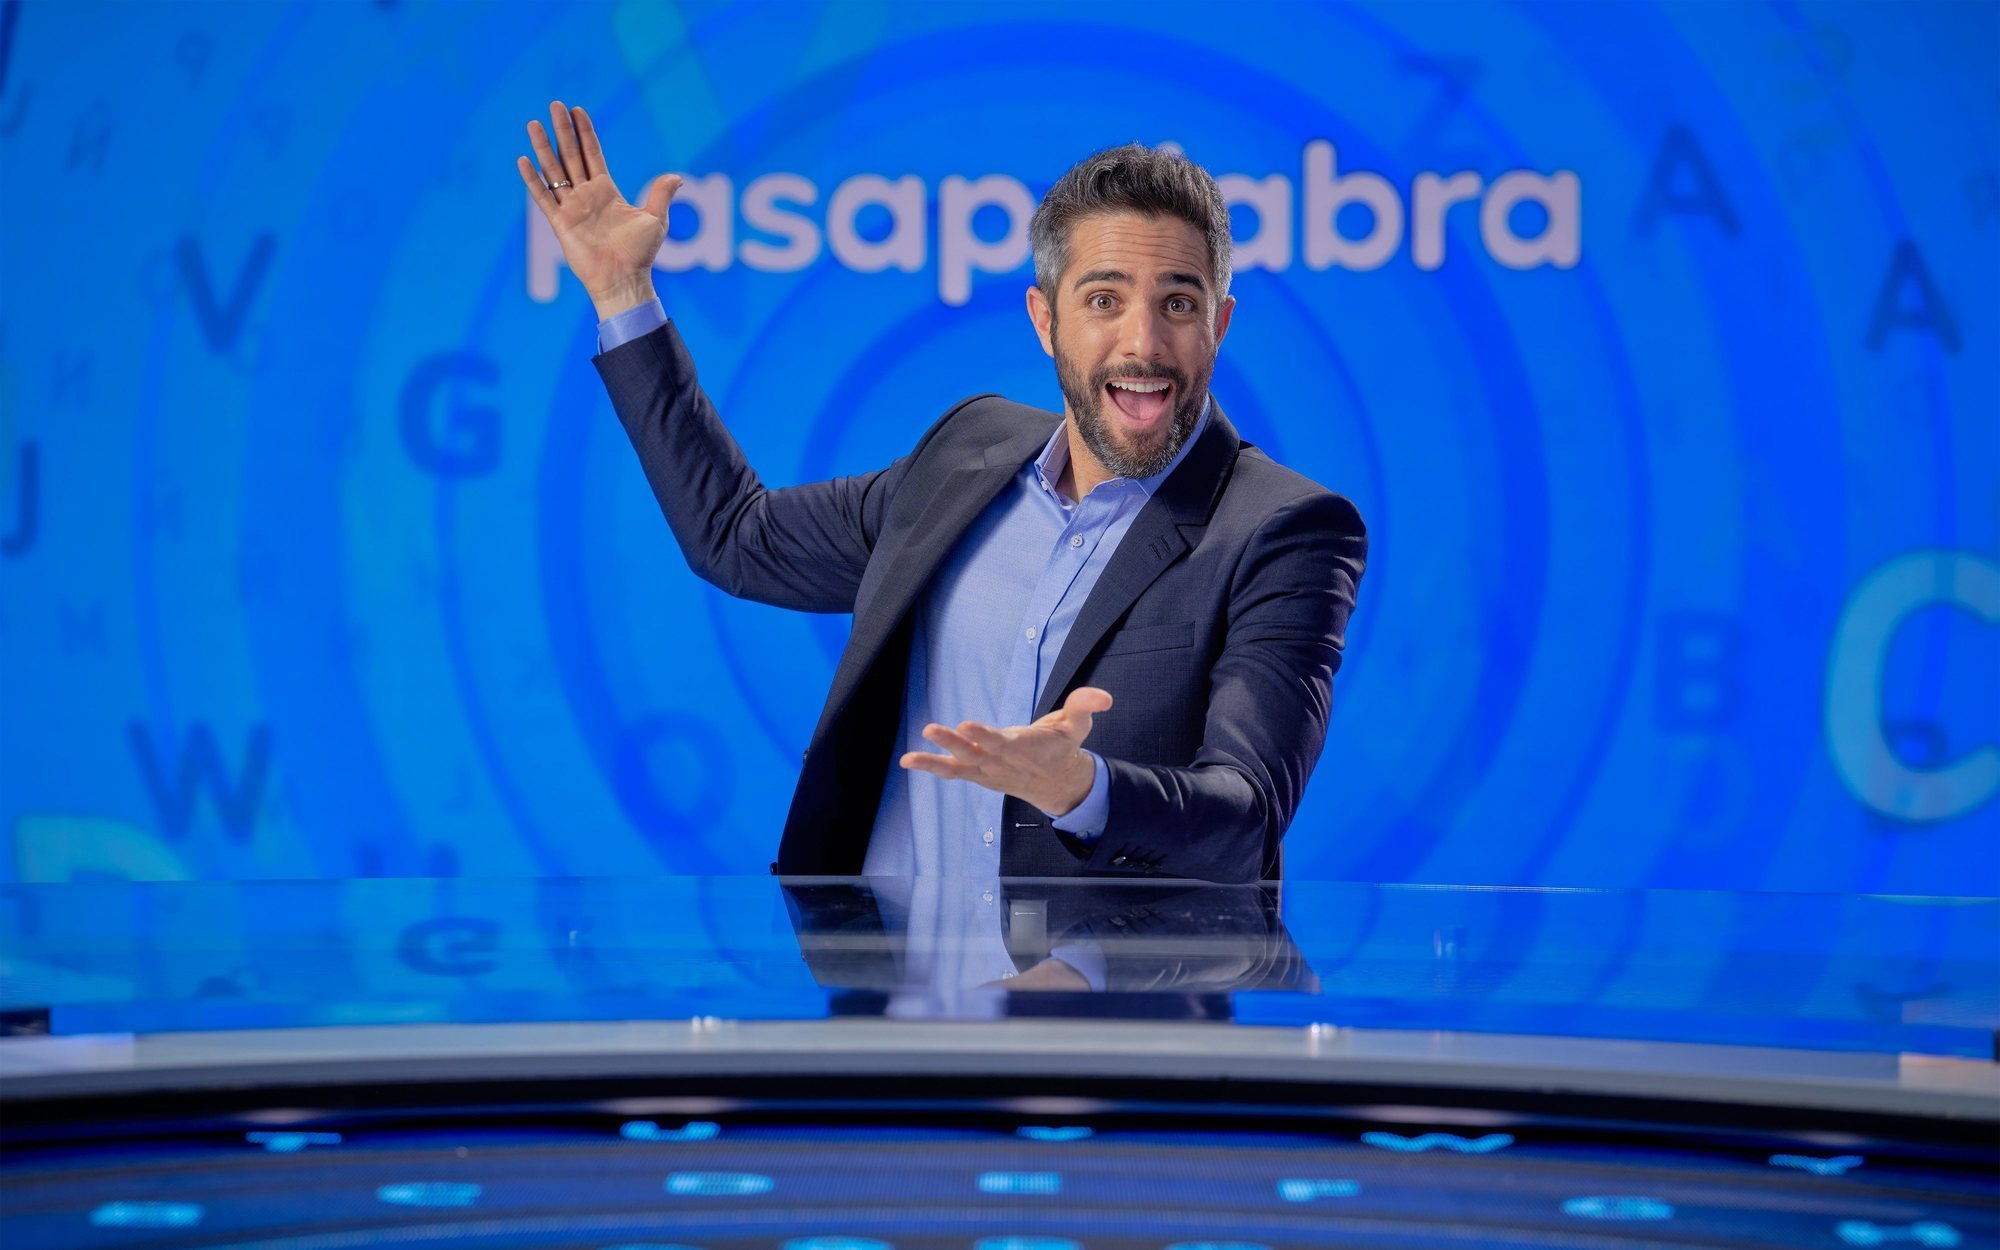 'Pasapalabra' regresa a Antena 3 el miércoles 13 de mayo con un estreno en prime time